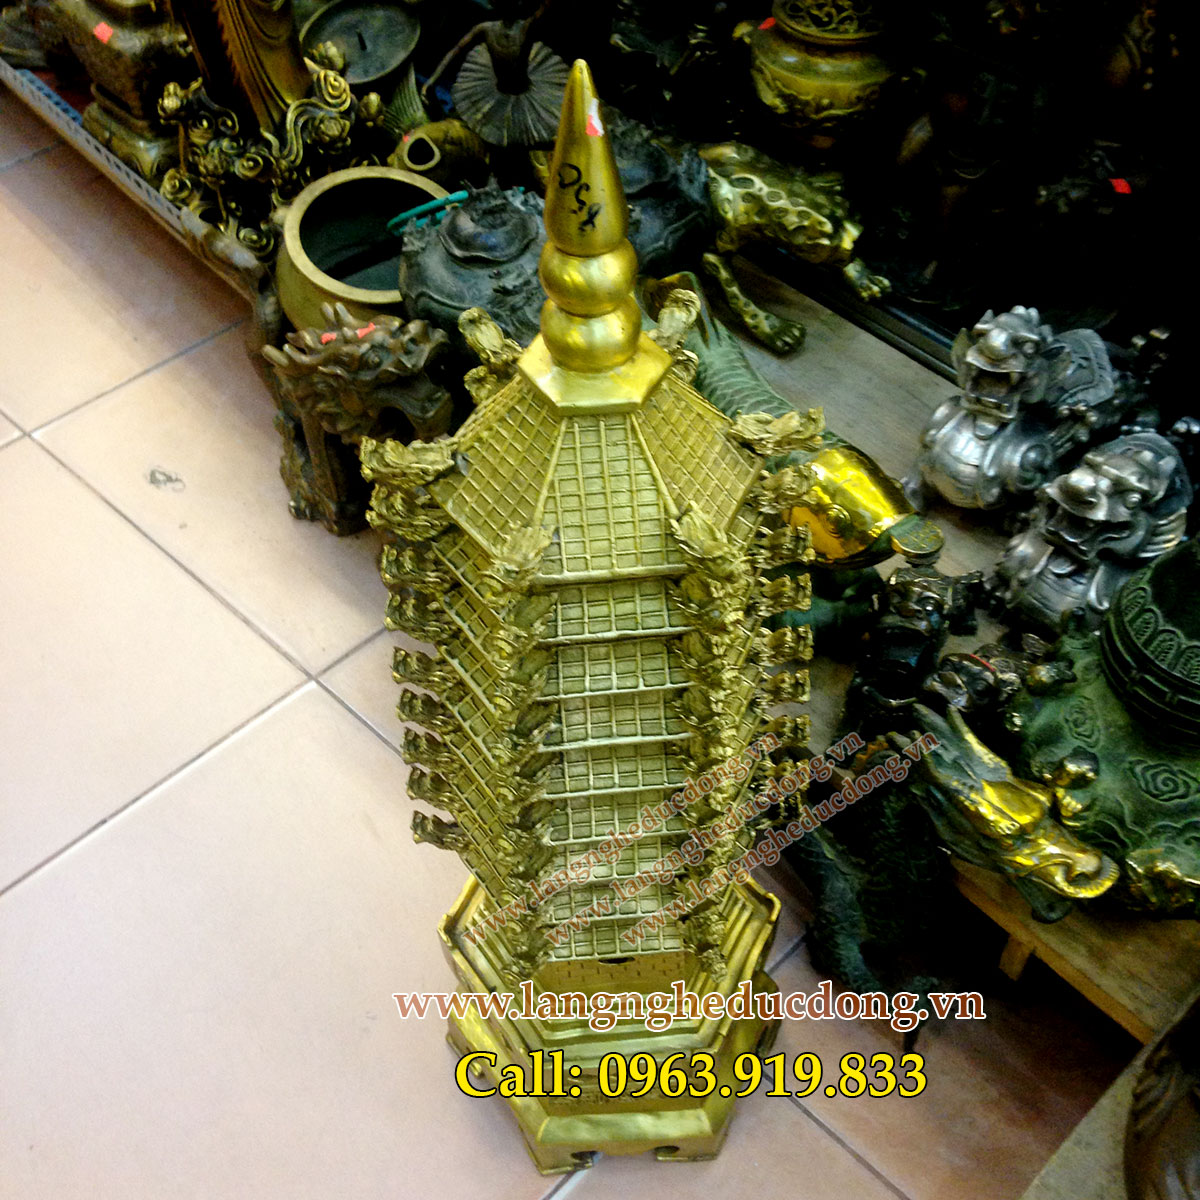 langngheducdong.vn -tháp văn xương bằng đồng phong thủy, Tháp văn xương cao 65cm